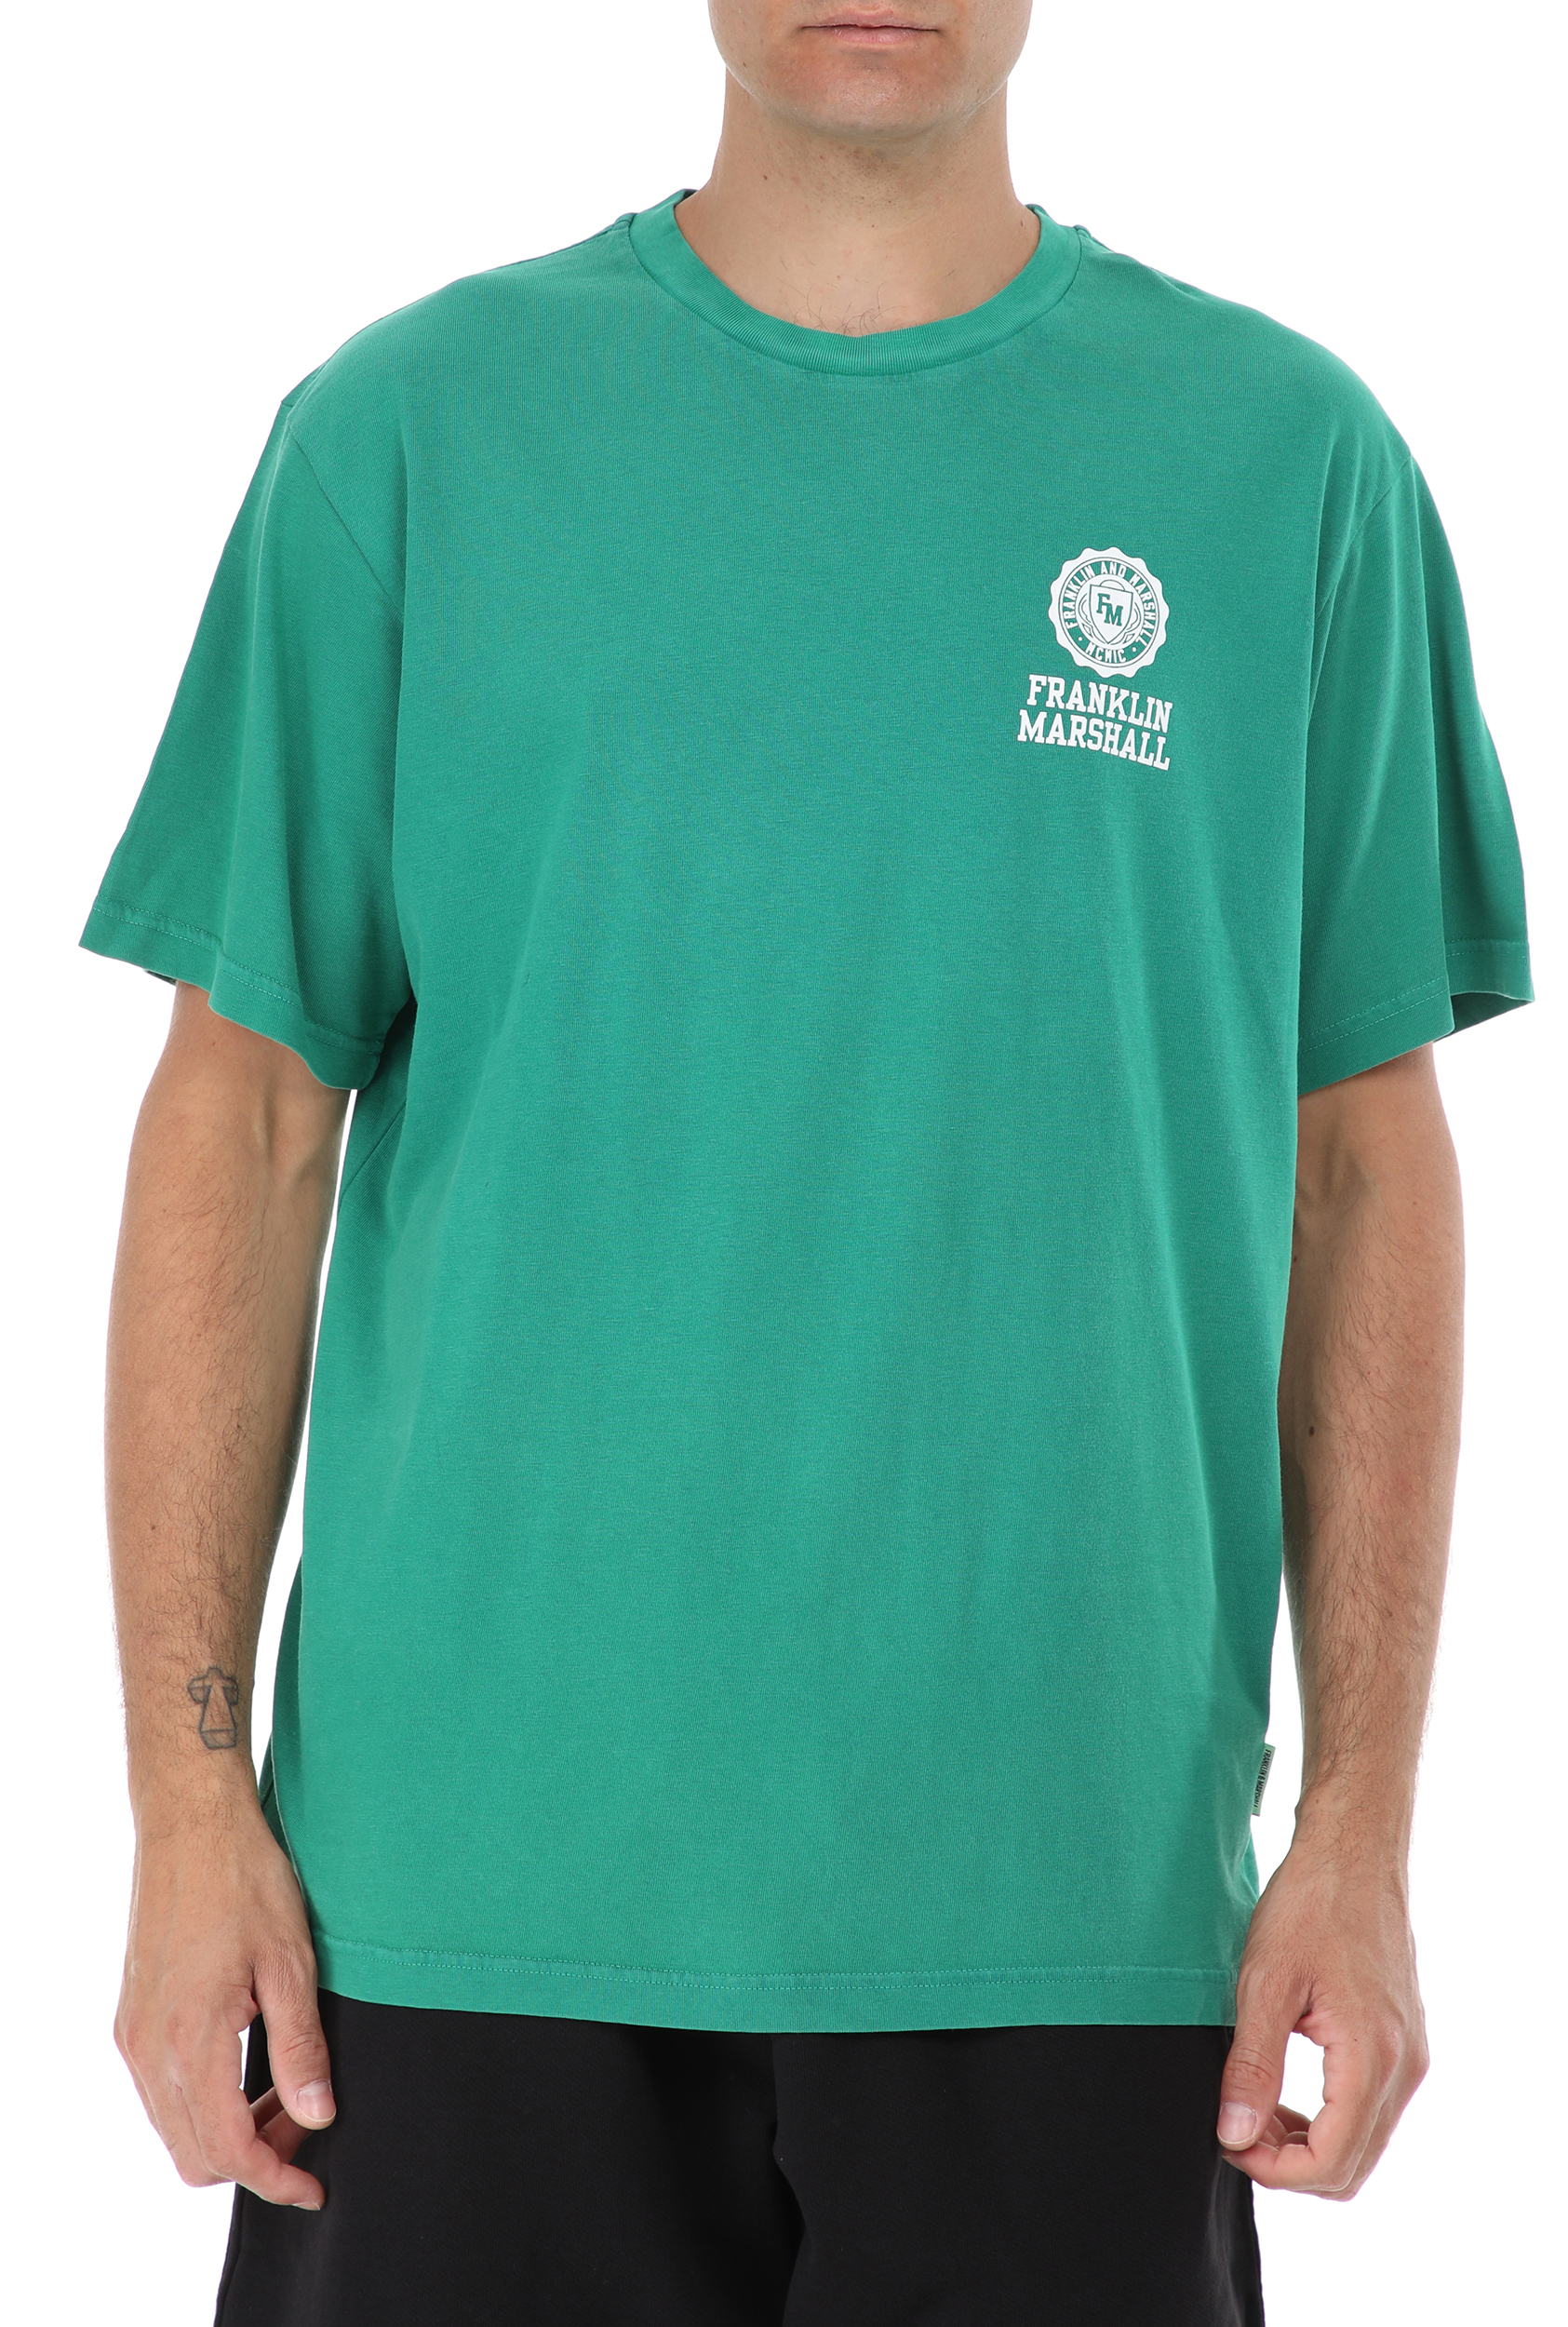 FRANKLIN & MARSHALL FRANKLIN & MARSHALL - Ανδρικό t-shirt FRANKLIN & MARSHALL πράσινο